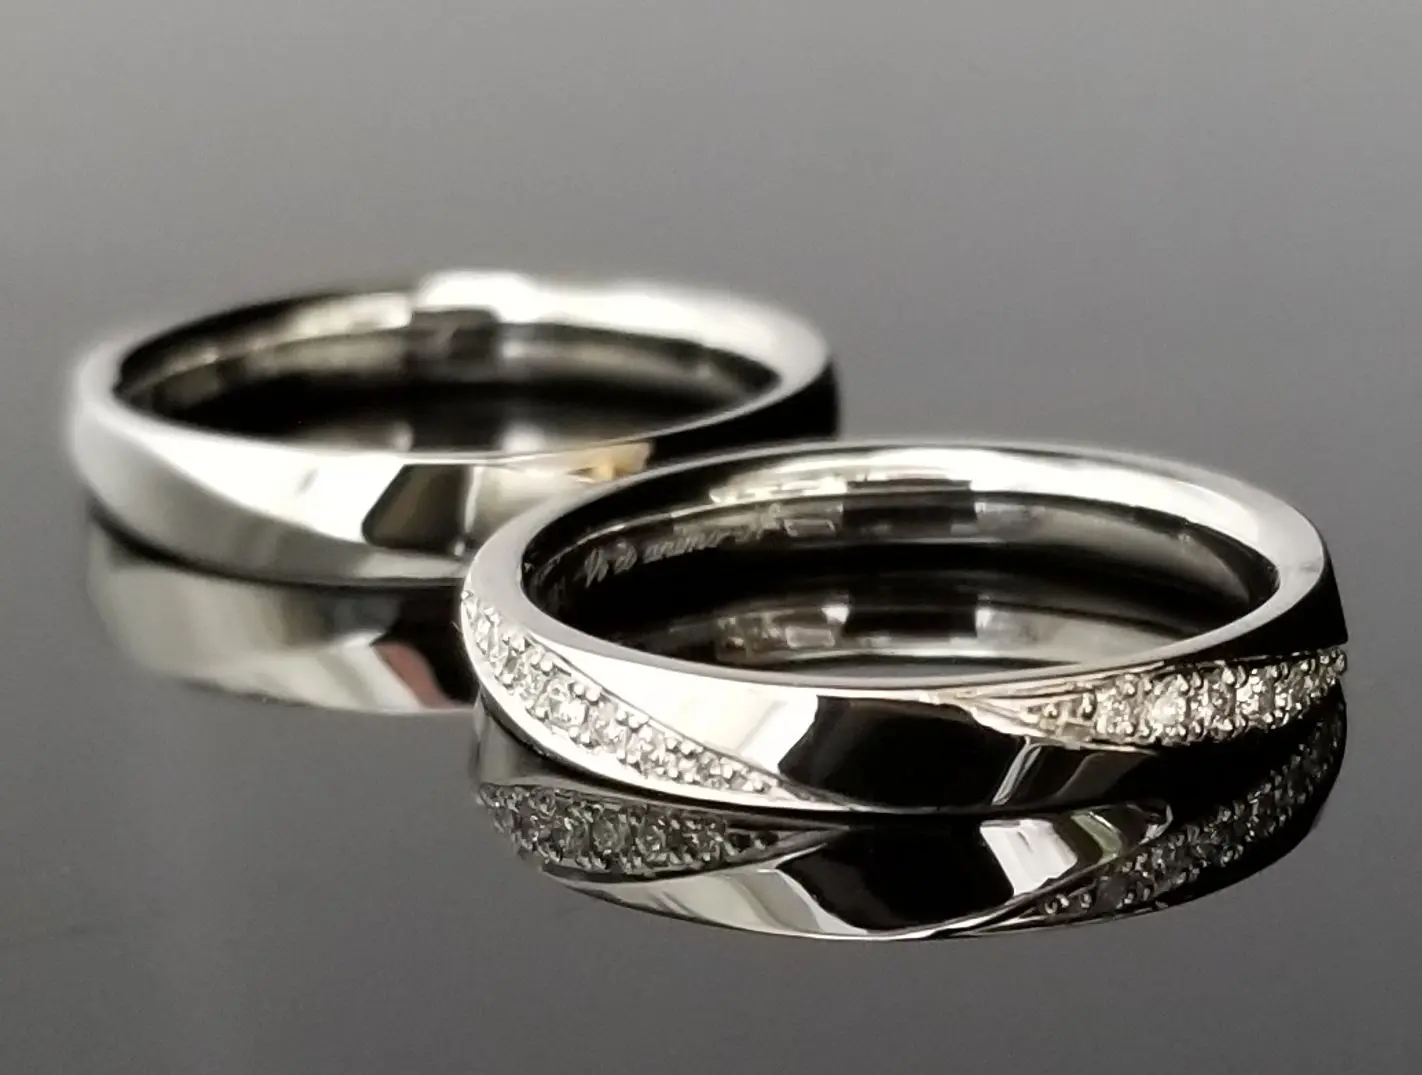 面取りにダイヤを敷き詰めた上品な指輪 | 結婚・婚約指輪のオーダー 